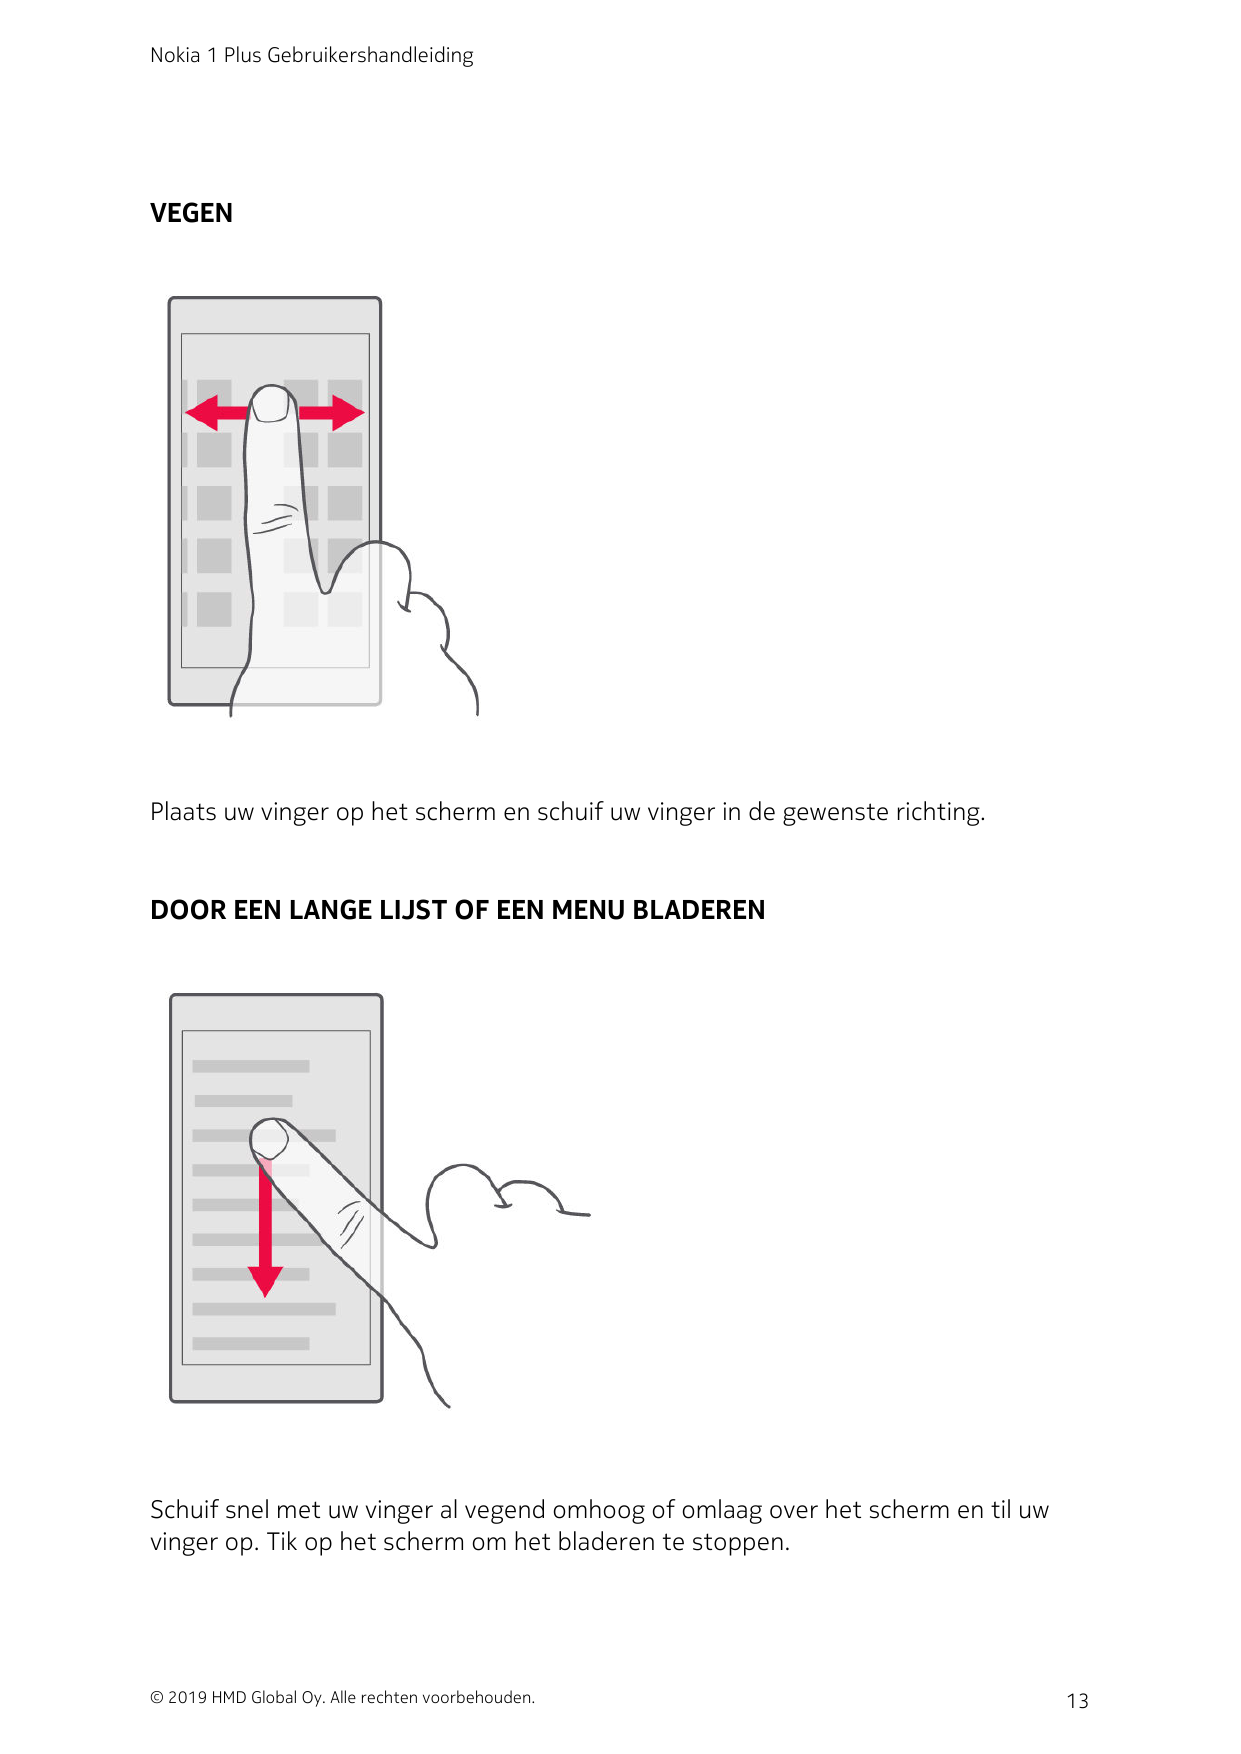 Nokia 1 Plus GebruikershandleidingVEGENPlaats uw vinger op het scherm en schuif uw vinger in de gewenste richting.DOOR EEN LANGE